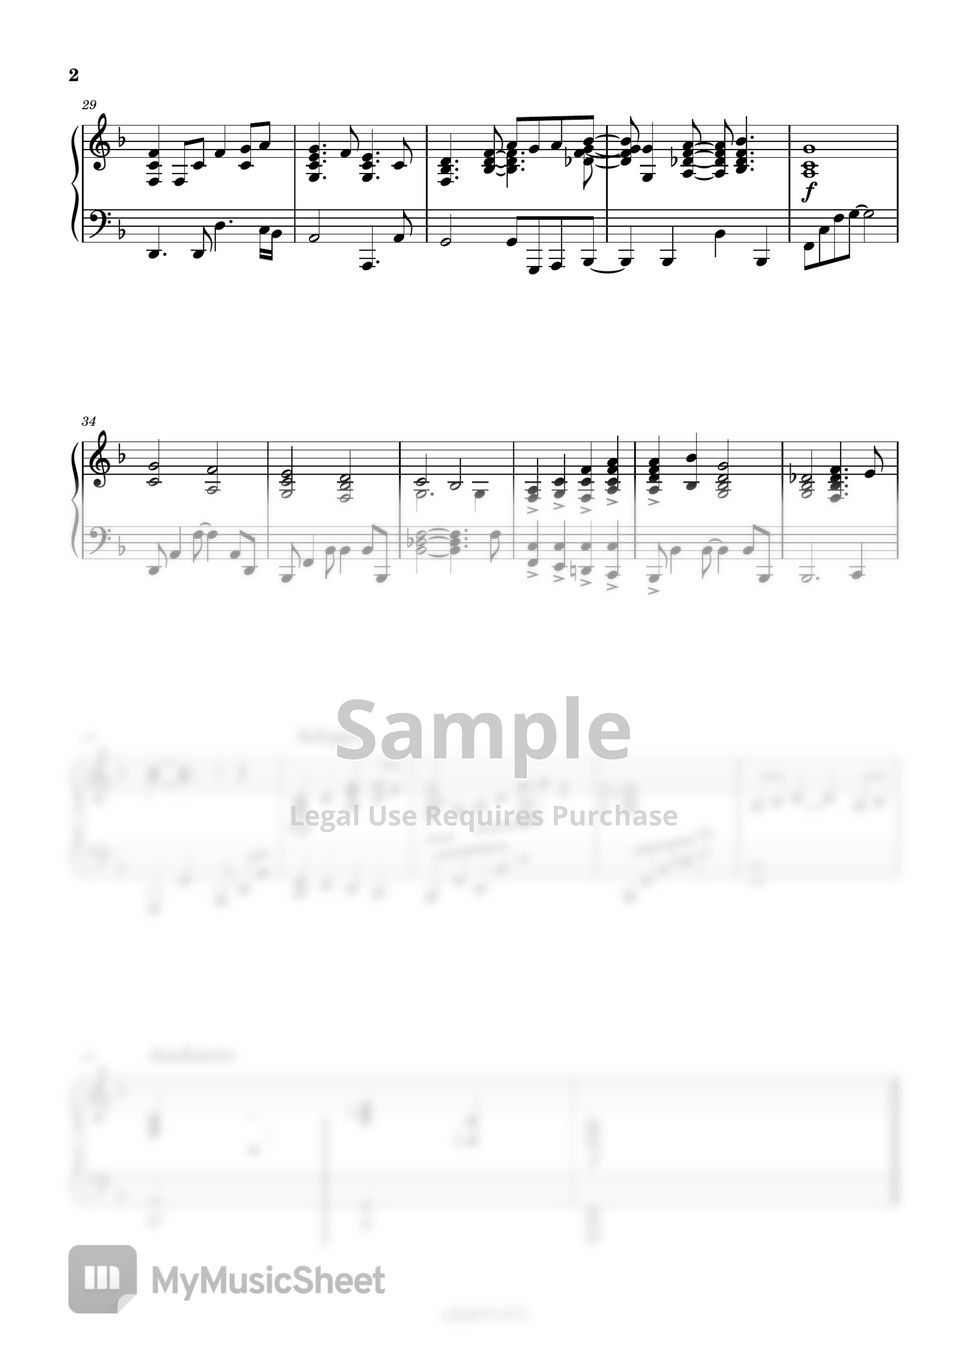 크리스티나 아길레라 - Reflection (디즈니 뮬란 OST/반주 MR/피아노 악보) by 심플플루트뮤직